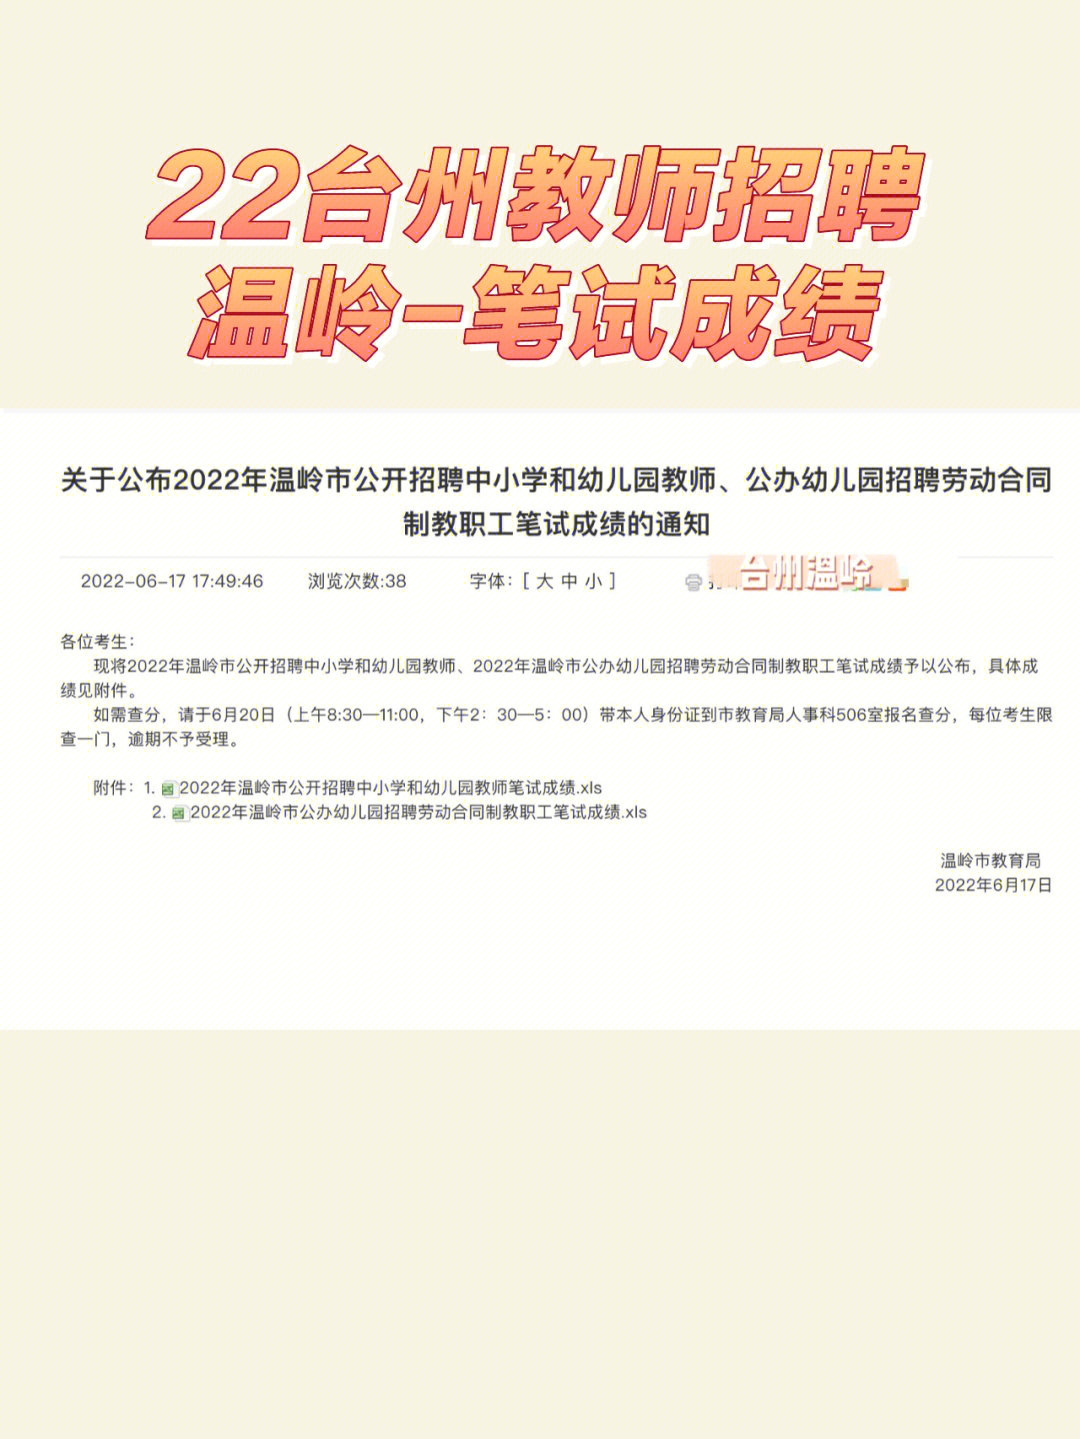 成绩公布7522年台州温岭教招笔试成绩公布